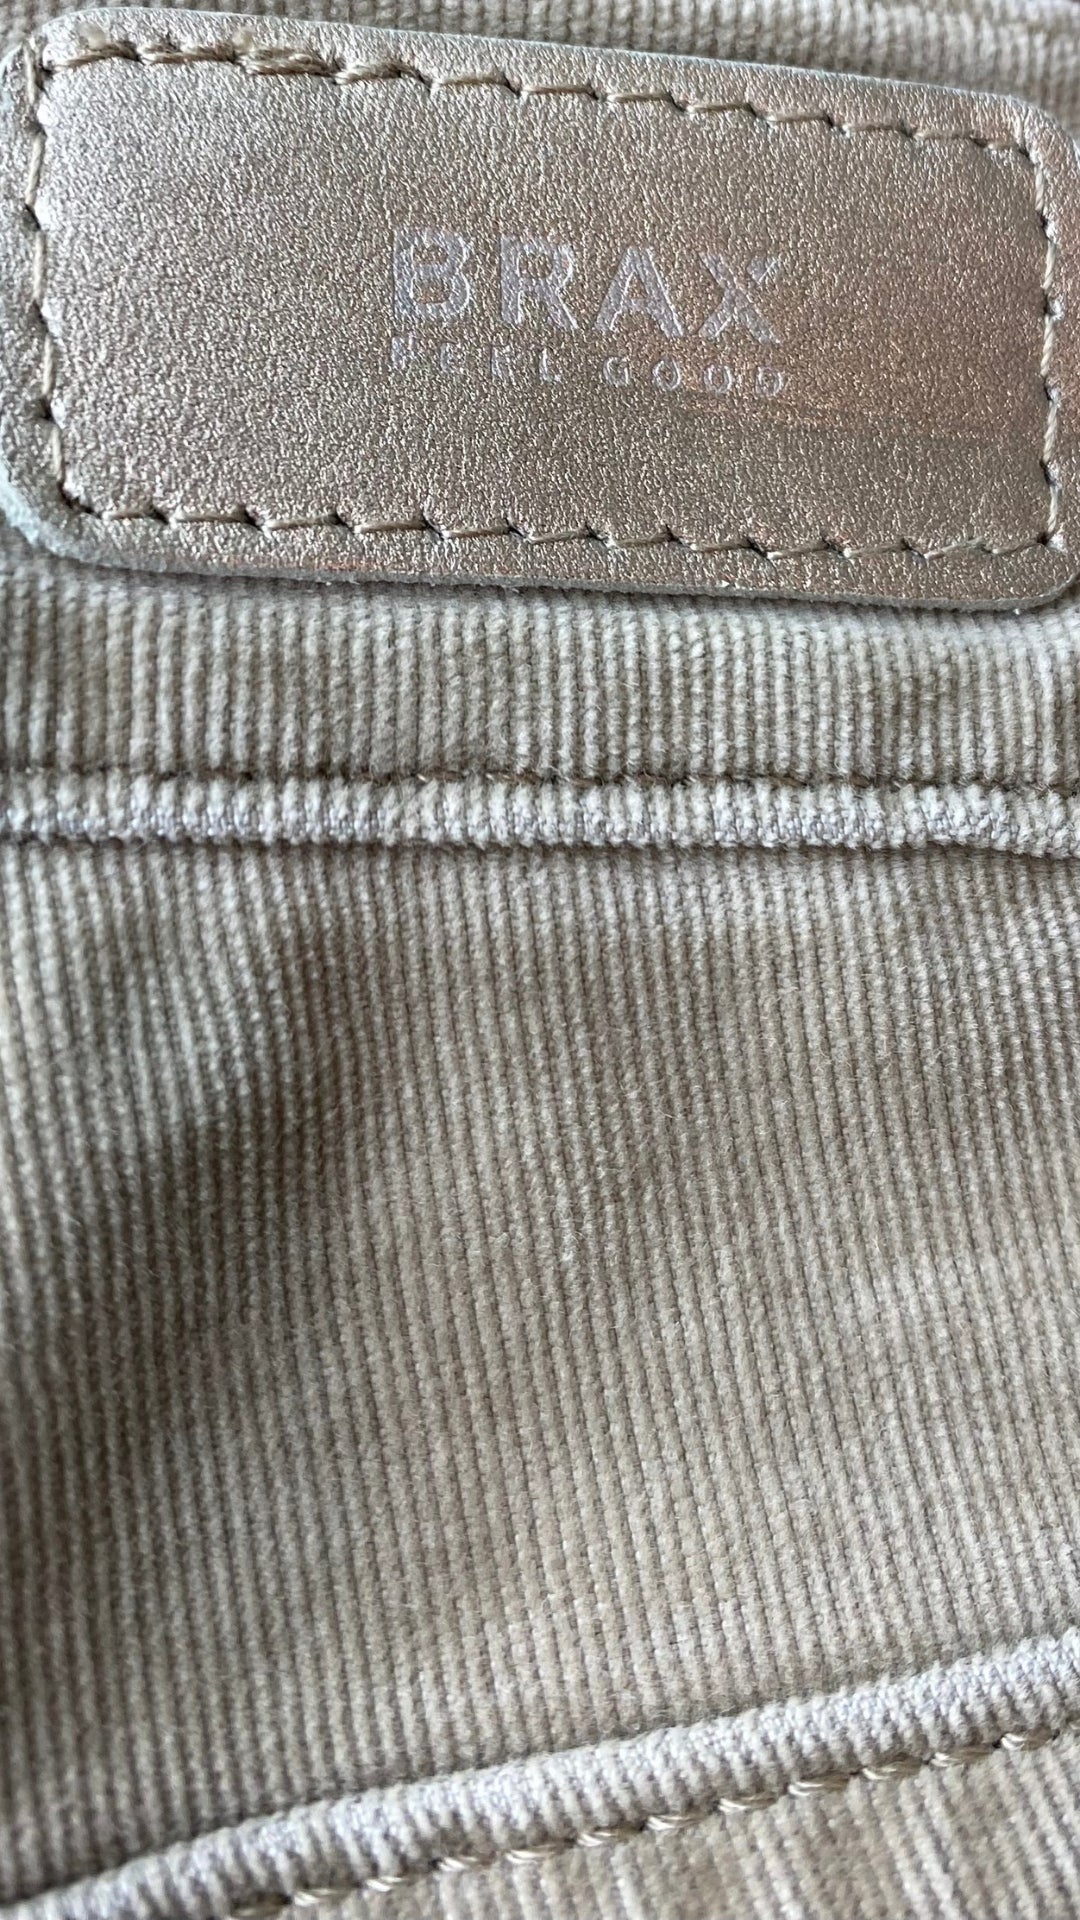 Pantalon en fin velours côtelé beige Brax, taille 31. Vue de l'étiquette de marque au dos.